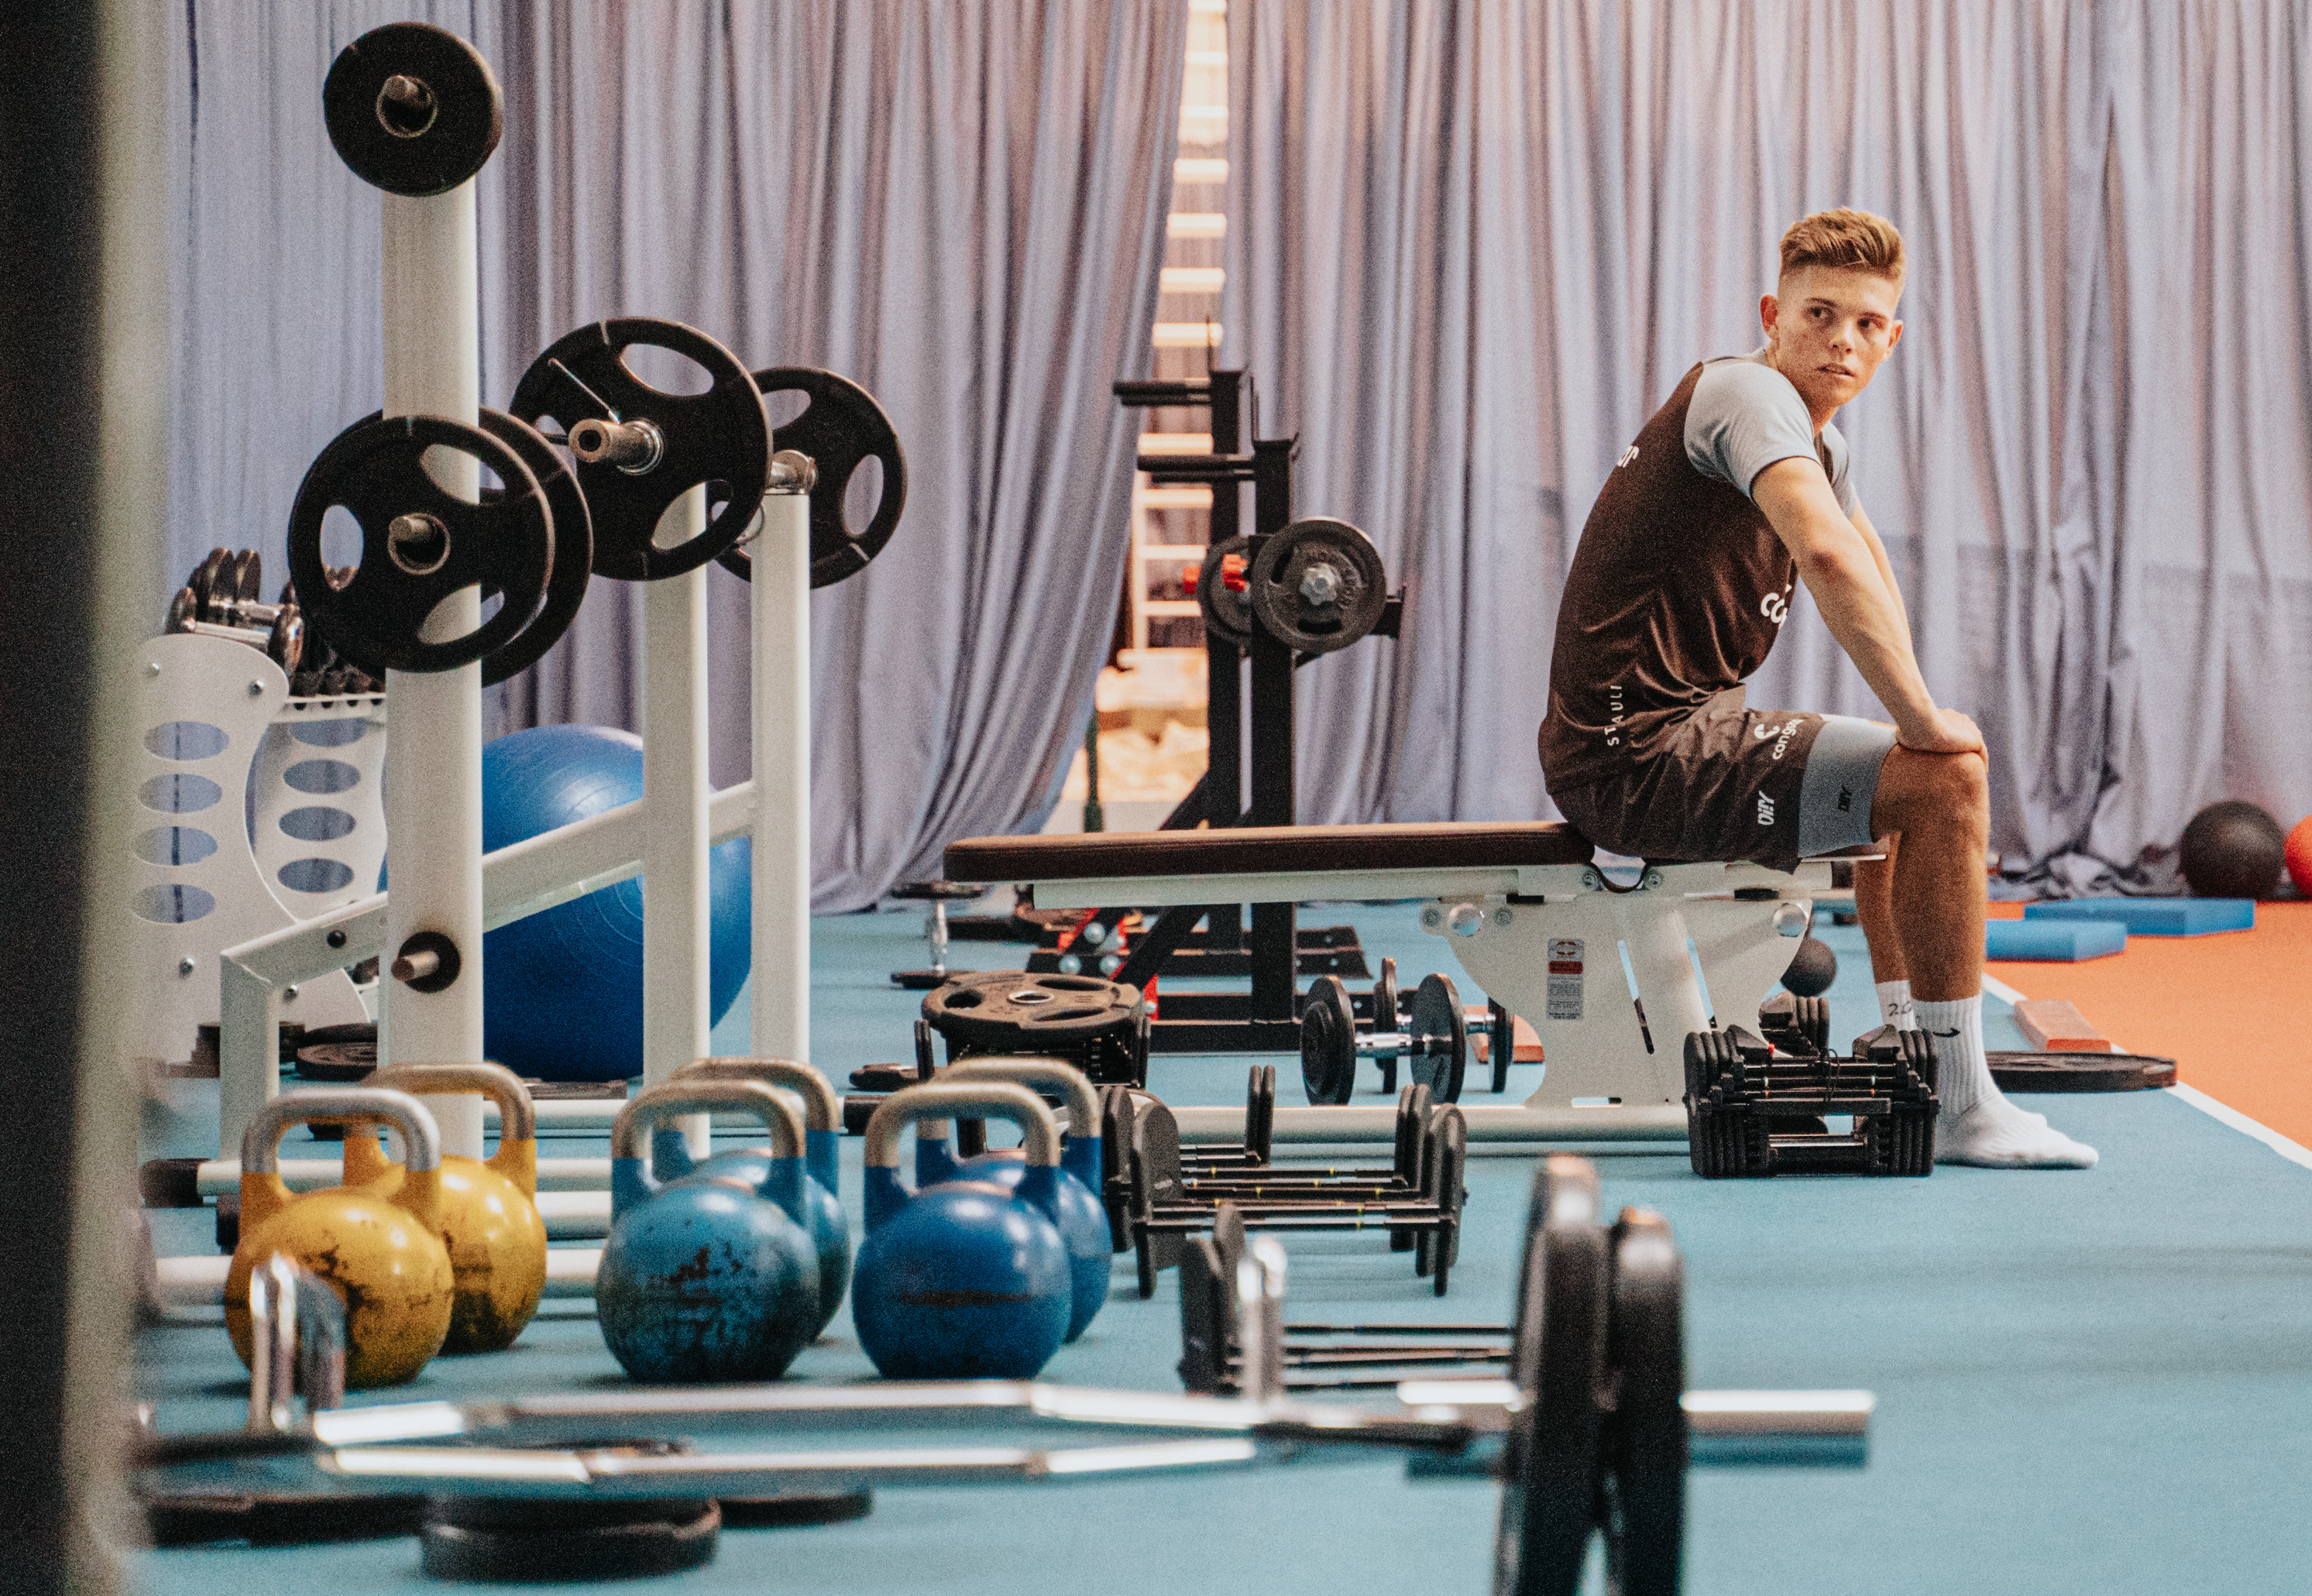 Ordentlich Kraft aufbauen  - Finn Ole Becker im Fitness-Bereich im Trainingslager in Herzlake.